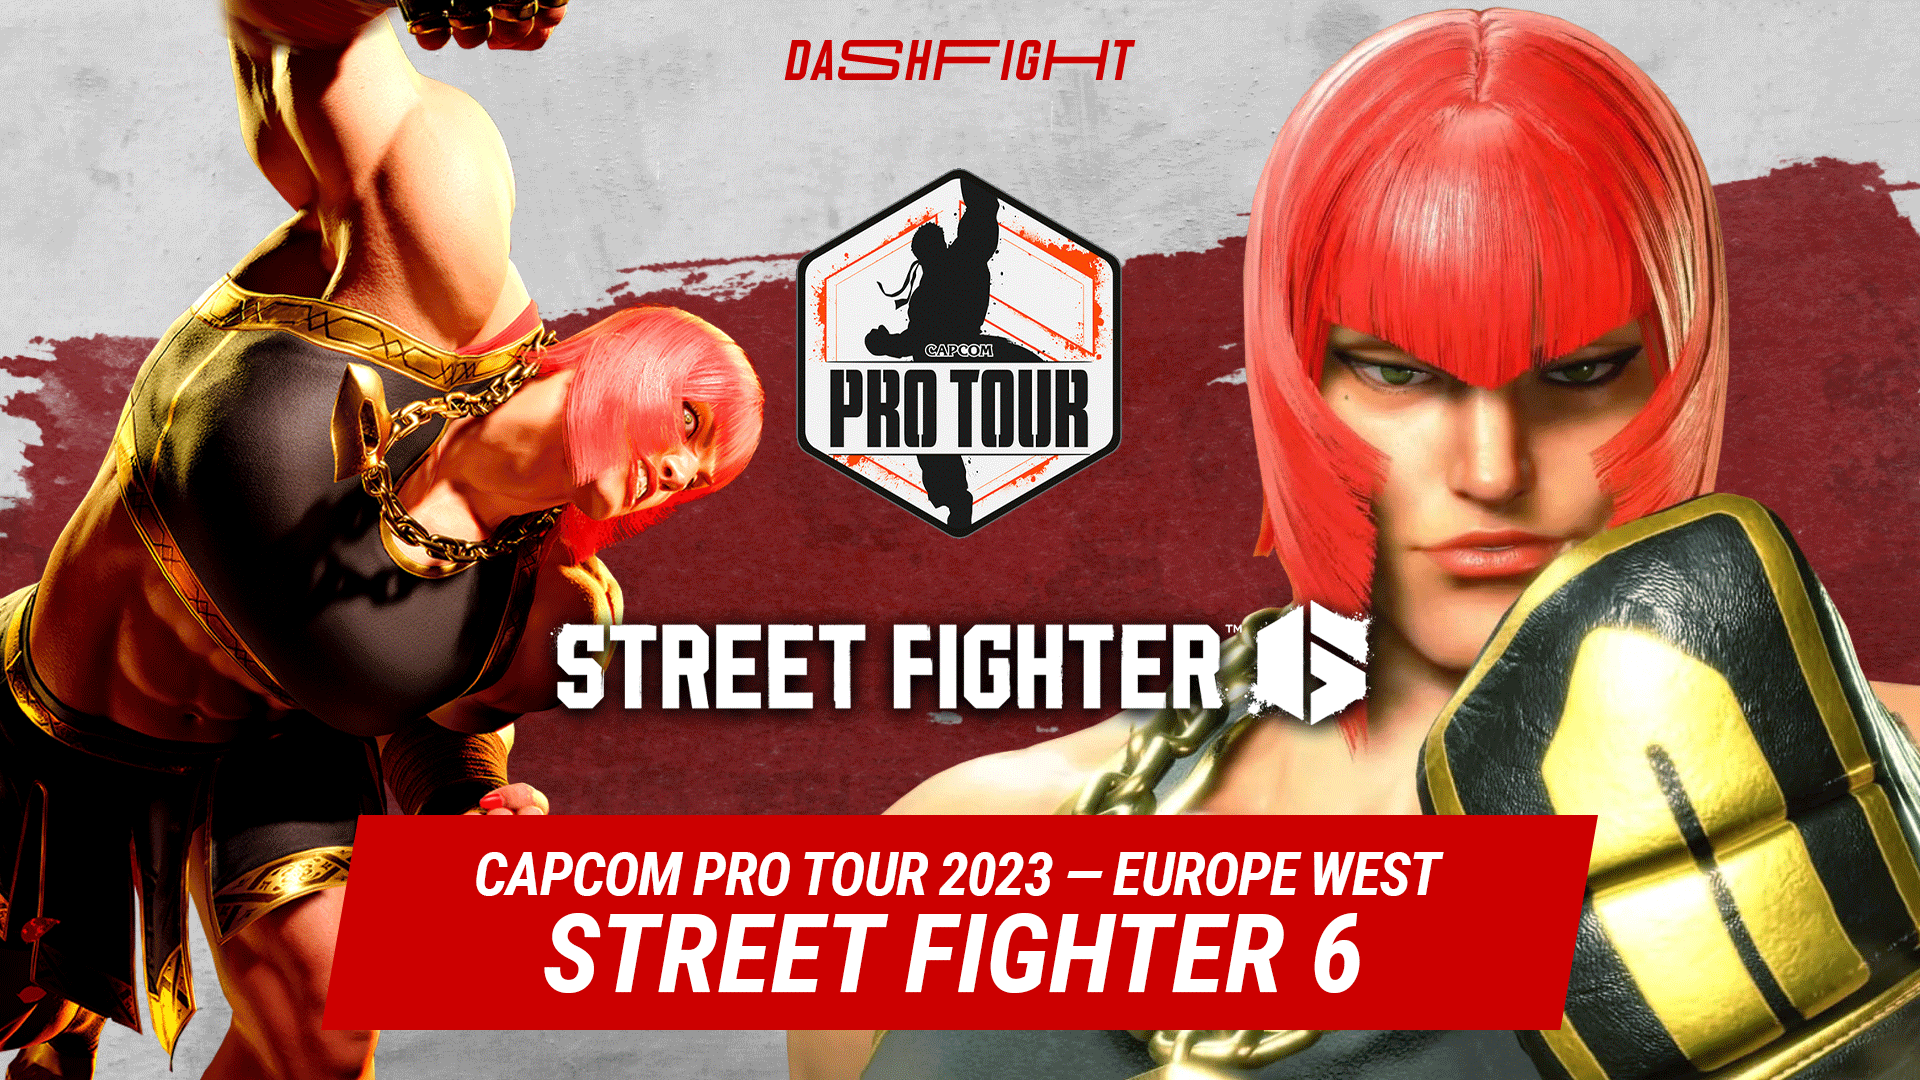 Capcom Pro Tour 2023 Europe West